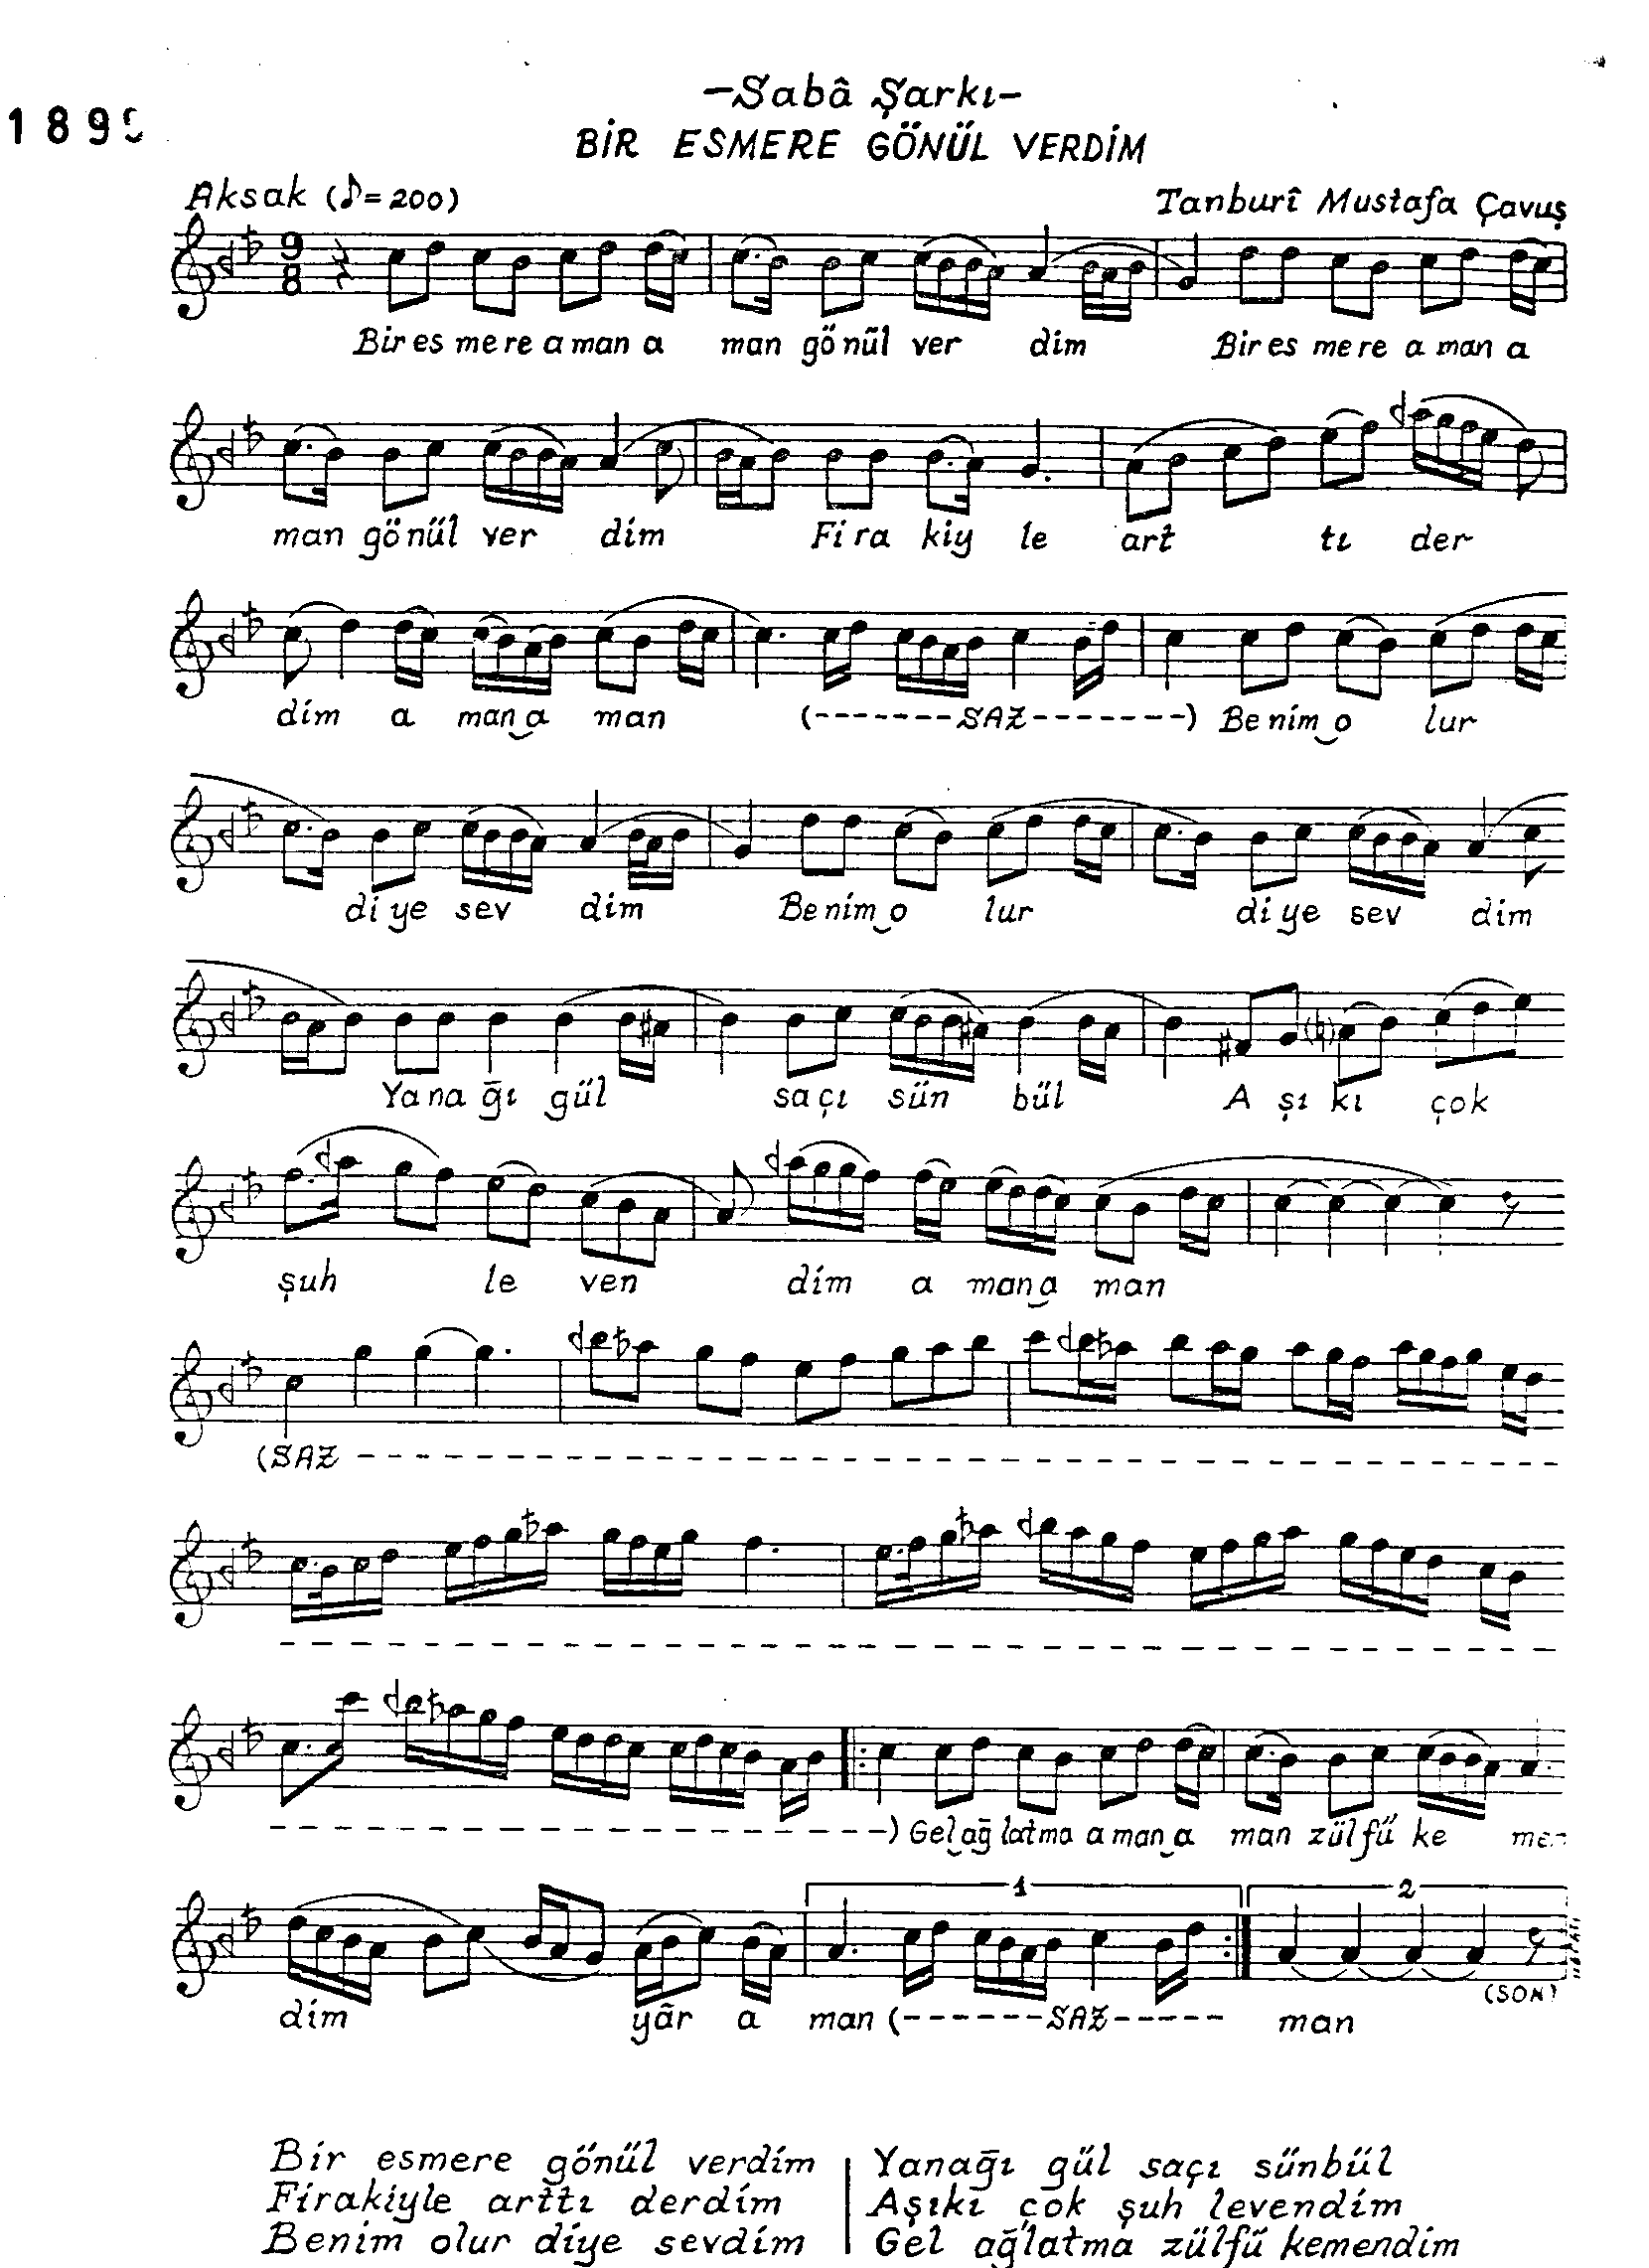 Sabâ - Şarkı - Tanbûri Mustafa Çavuş - Sayfa 1